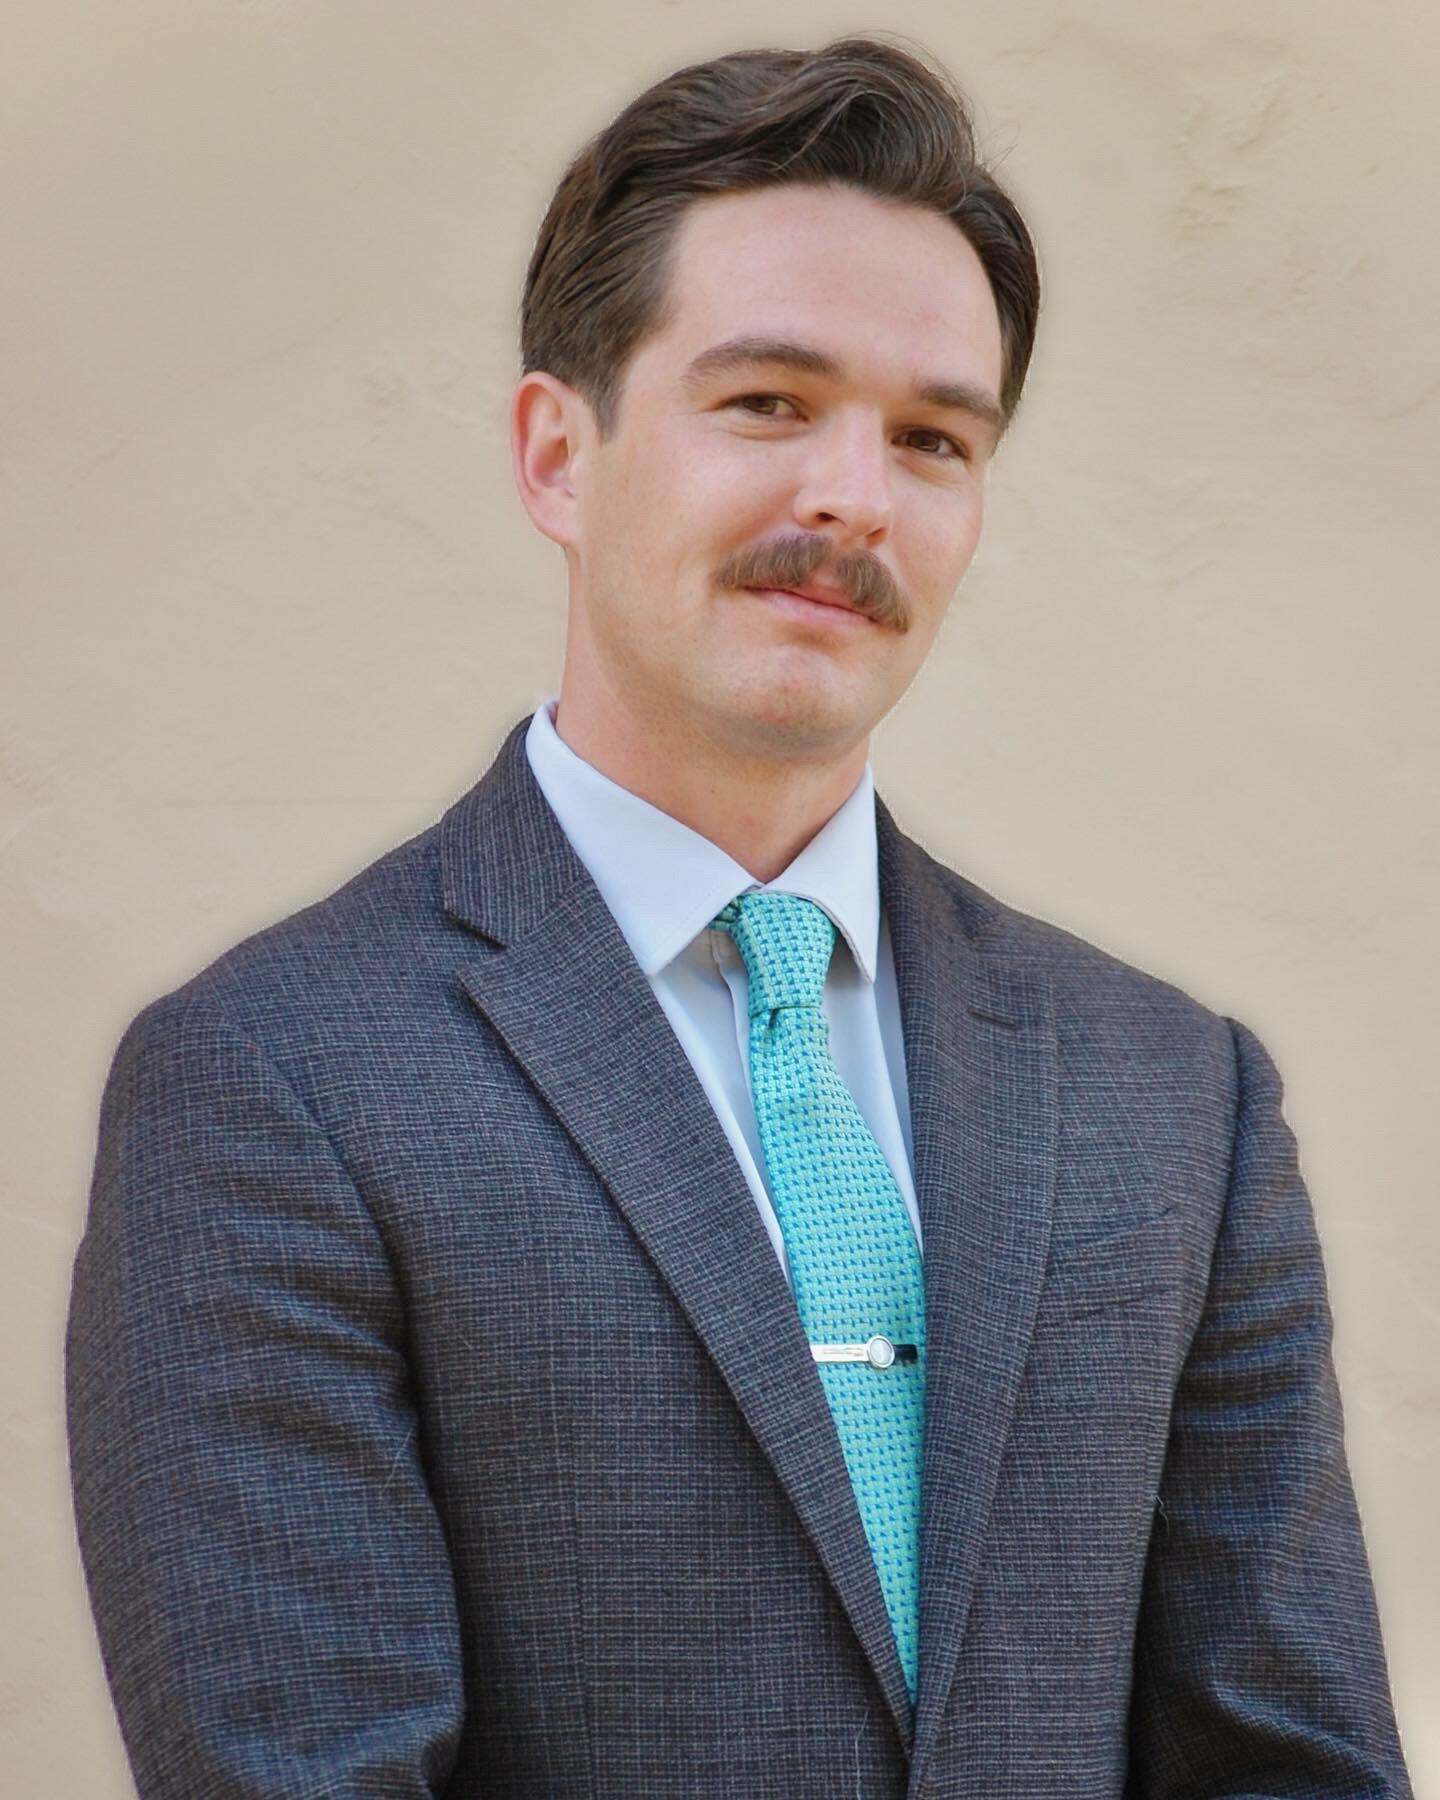 Jared Otjens, Real Estate Salesperson in El Cajon, Affiliated